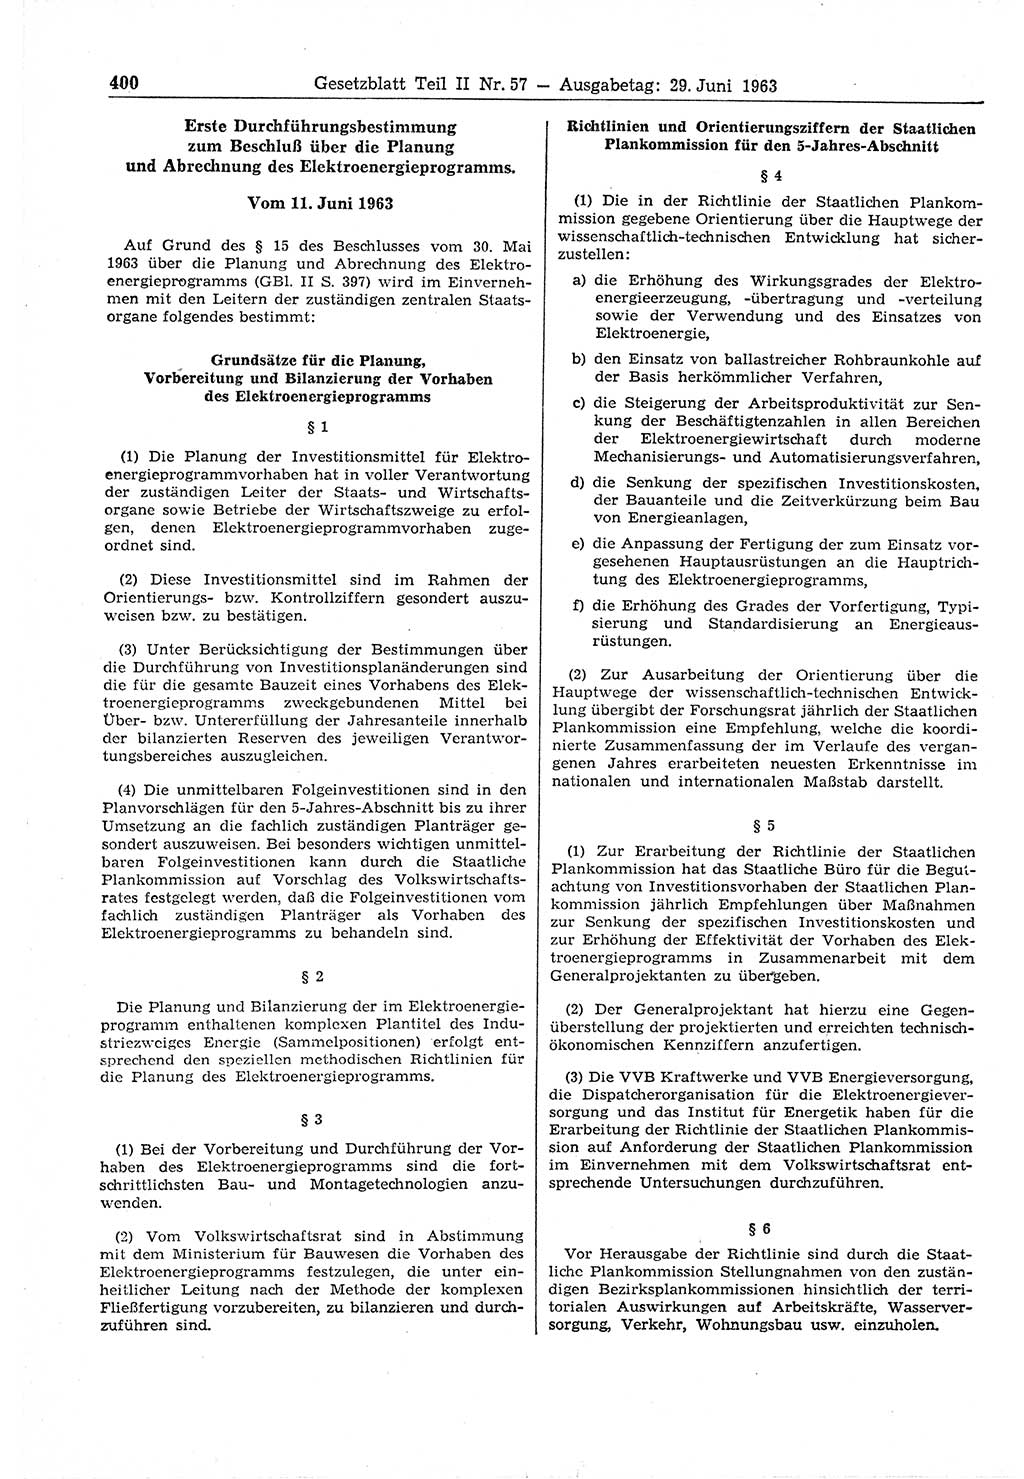 Gesetzblatt (GBl.) der Deutschen Demokratischen Republik (DDR) Teil ⅠⅠ 1963, Seite 400 (GBl. DDR ⅠⅠ 1963, S. 400)